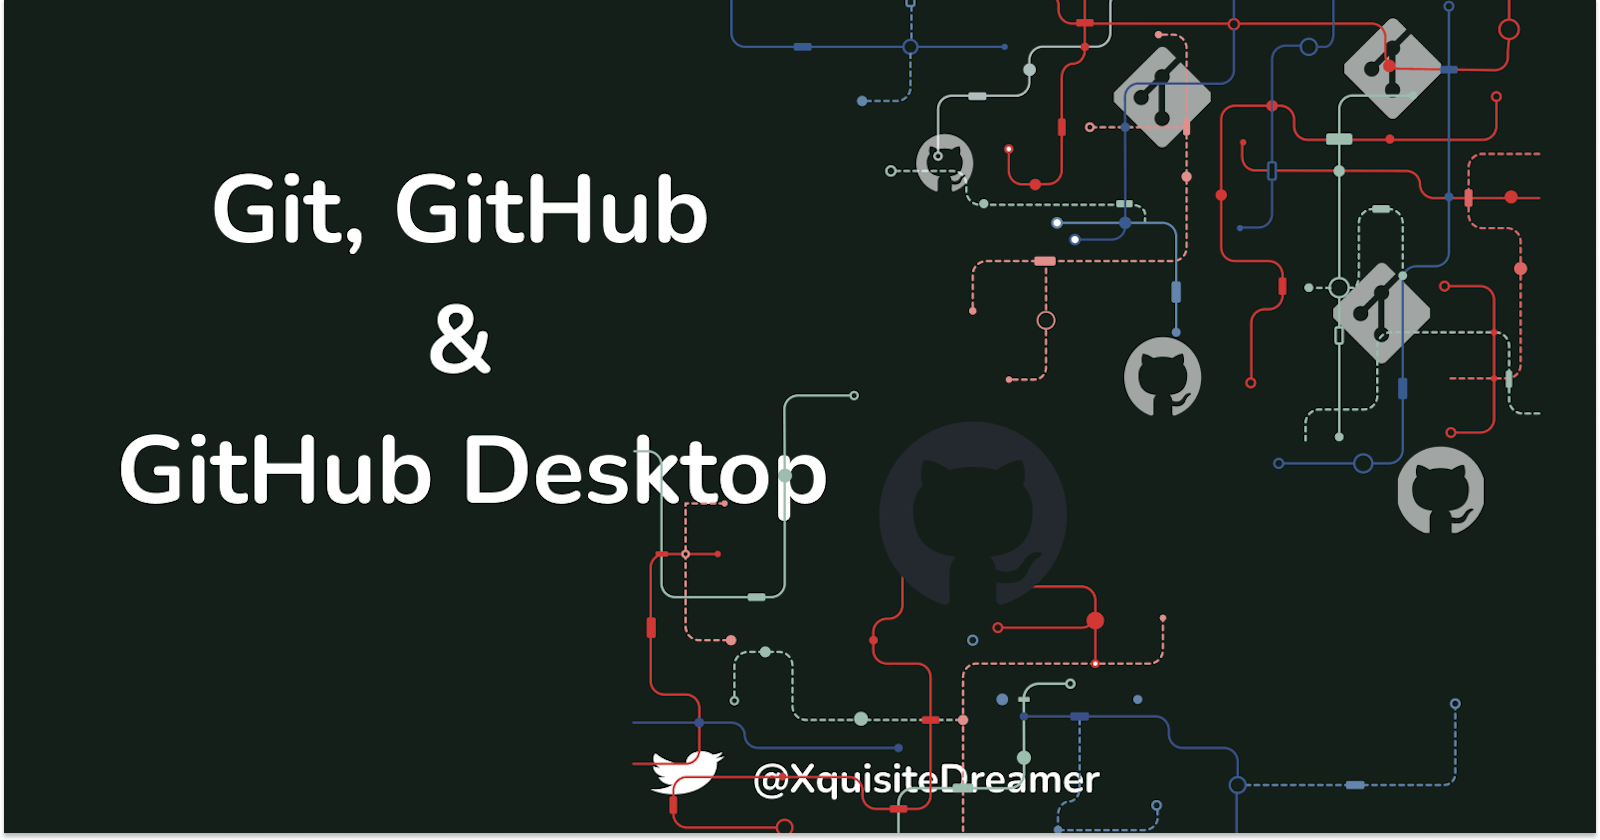 Notes on Git, GitHub and GitHub Desktop